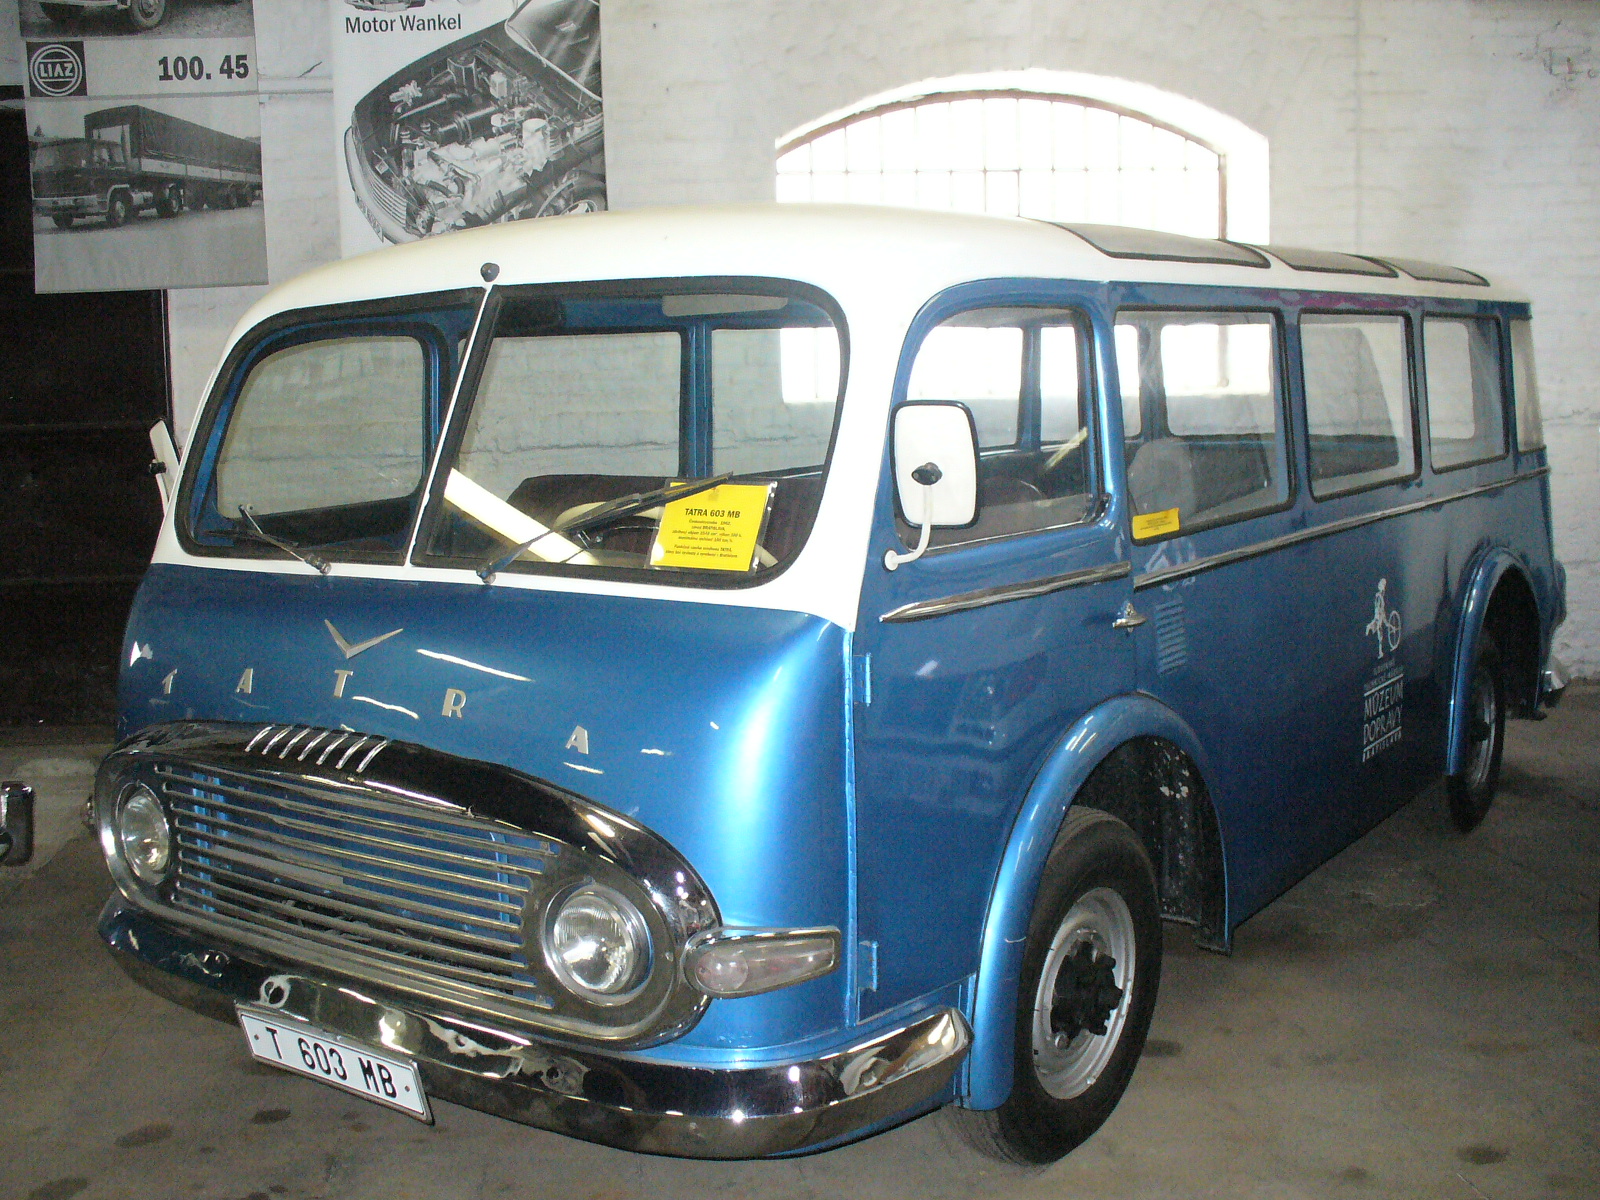 File:Tatra 603 MB.JPG - Wikimedia Commons